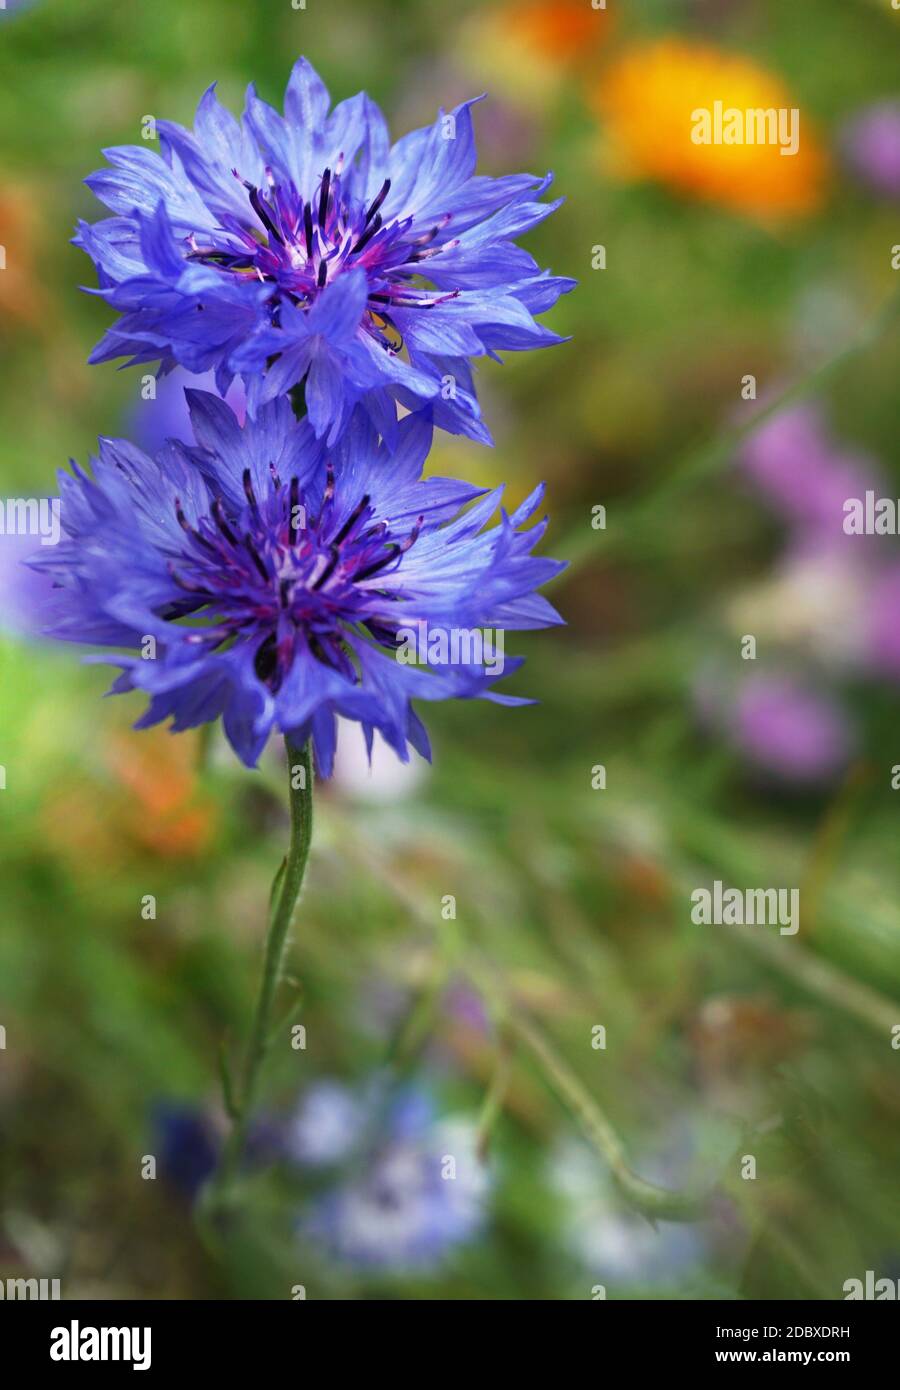 Kornblume oder Junggesellenbartblüte in einem Dickicht von Büschen im Sommer. Centaurea cyanus, allgemein bekannt als Kornblume oder Junggesellenknopf, ist ein A Stockfoto